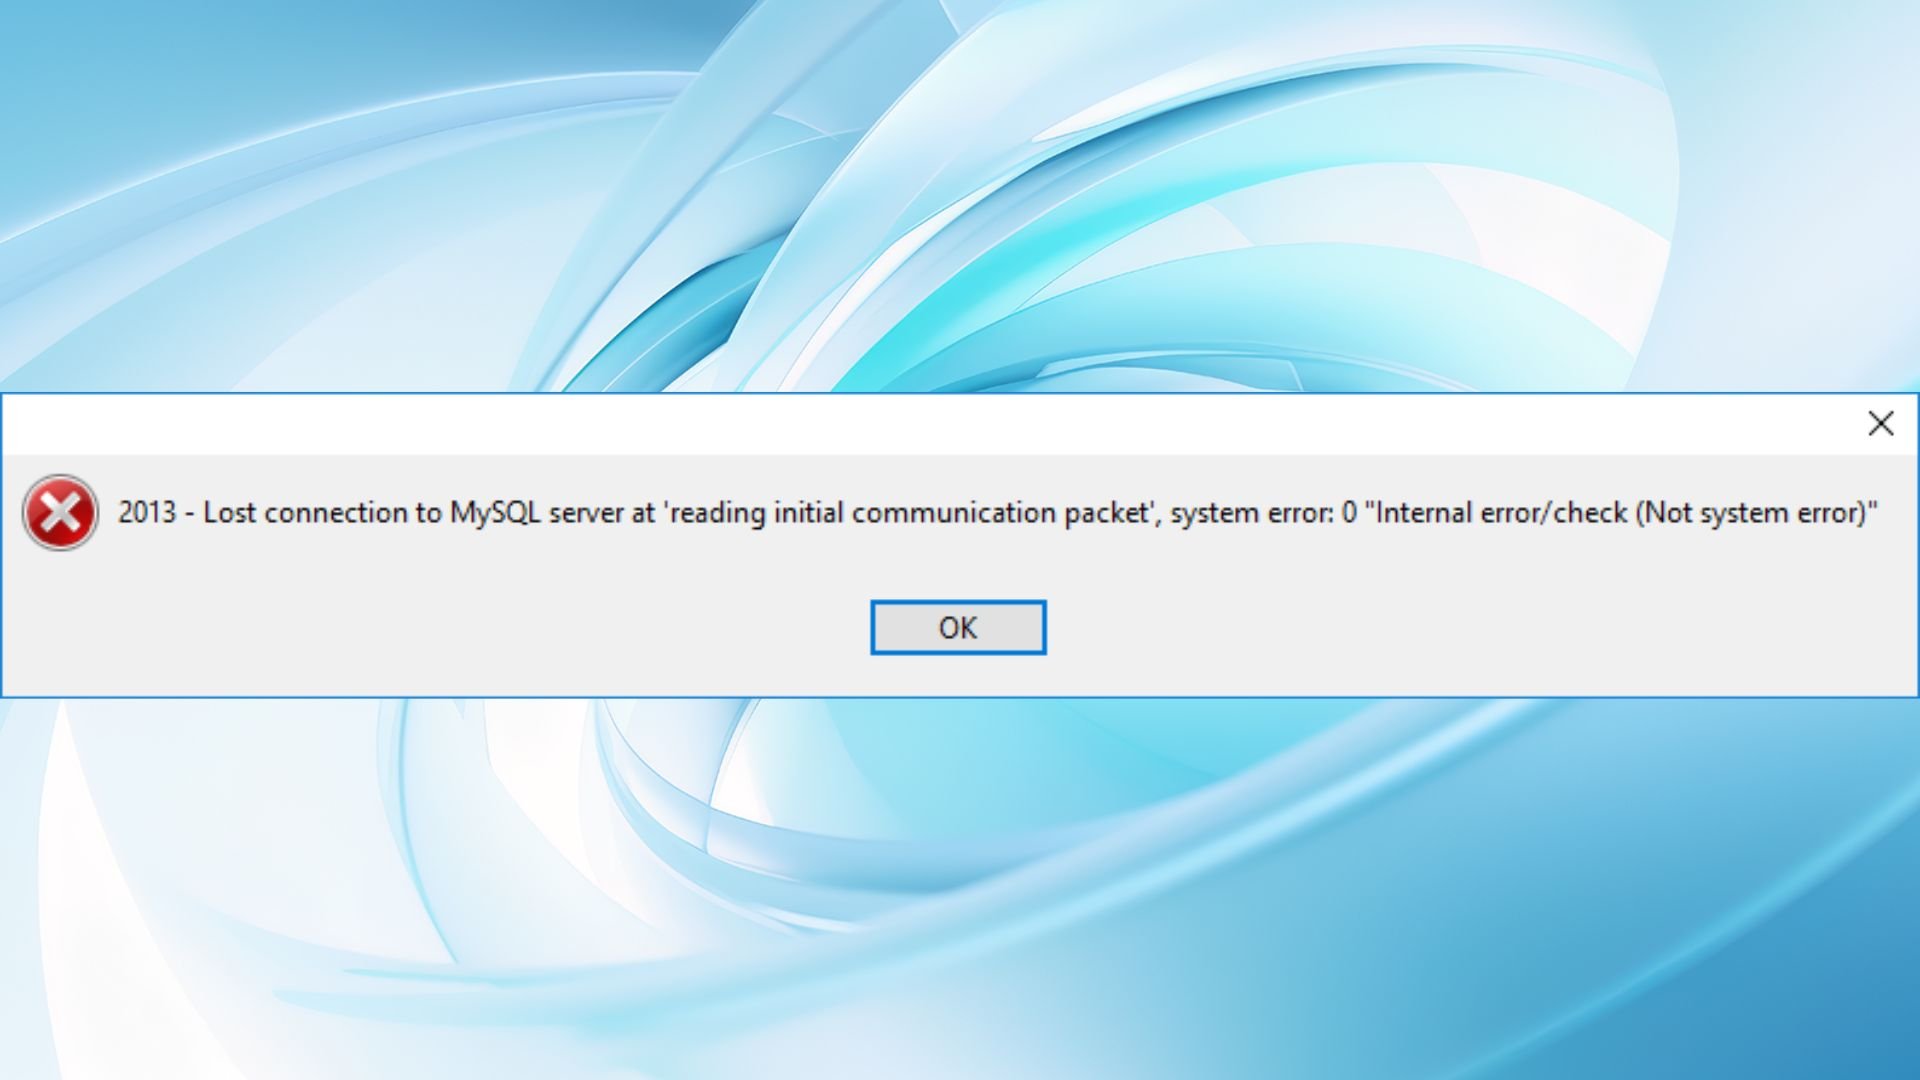 2013 — Utracono połączenie z serwerem MySQL podczas „odczytu początkowego pakietu komunikacyjnego”, błąd systemowy: 0